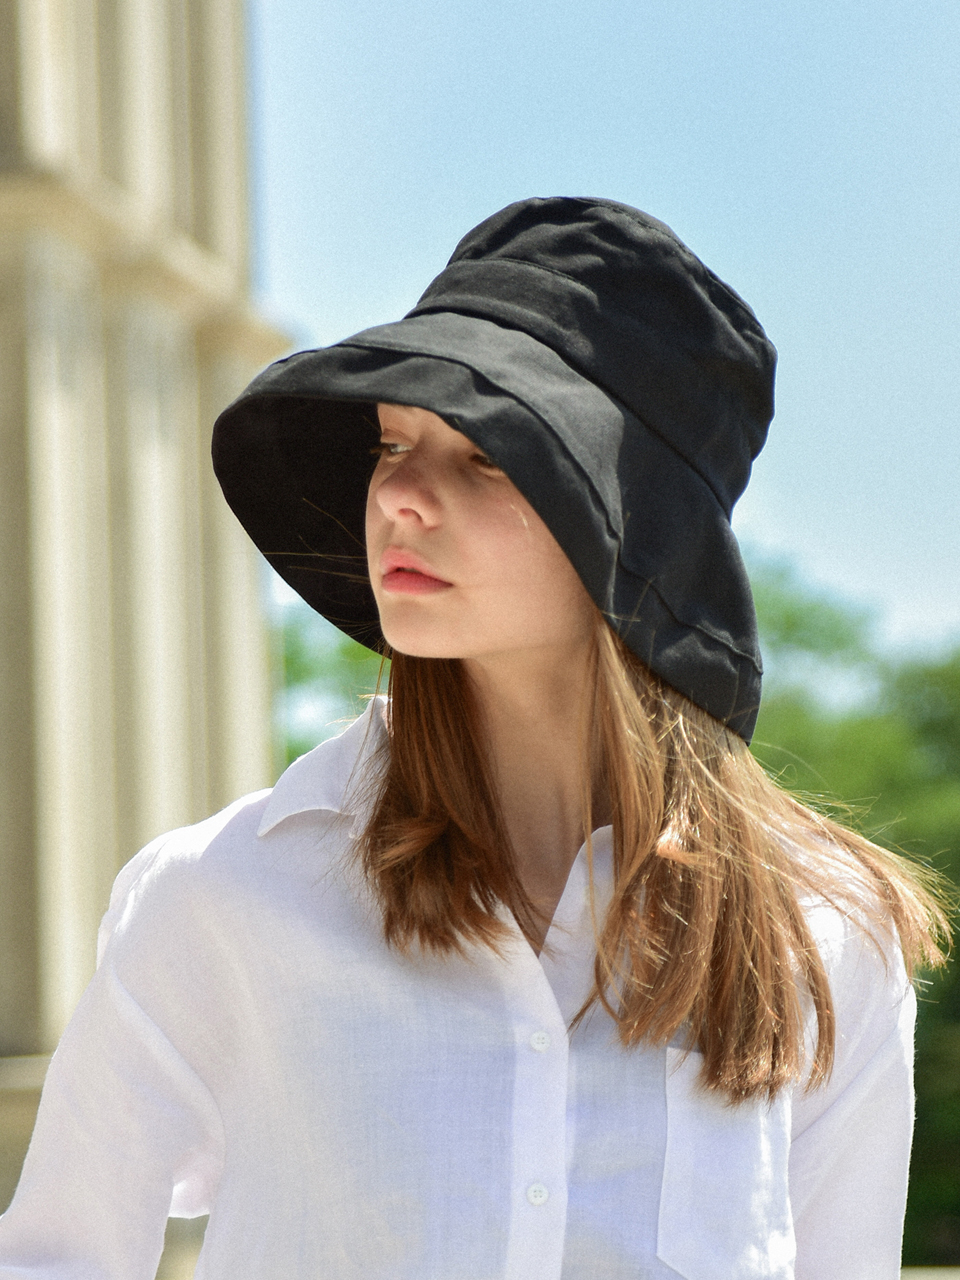 Wien Bucket Hat (Black)